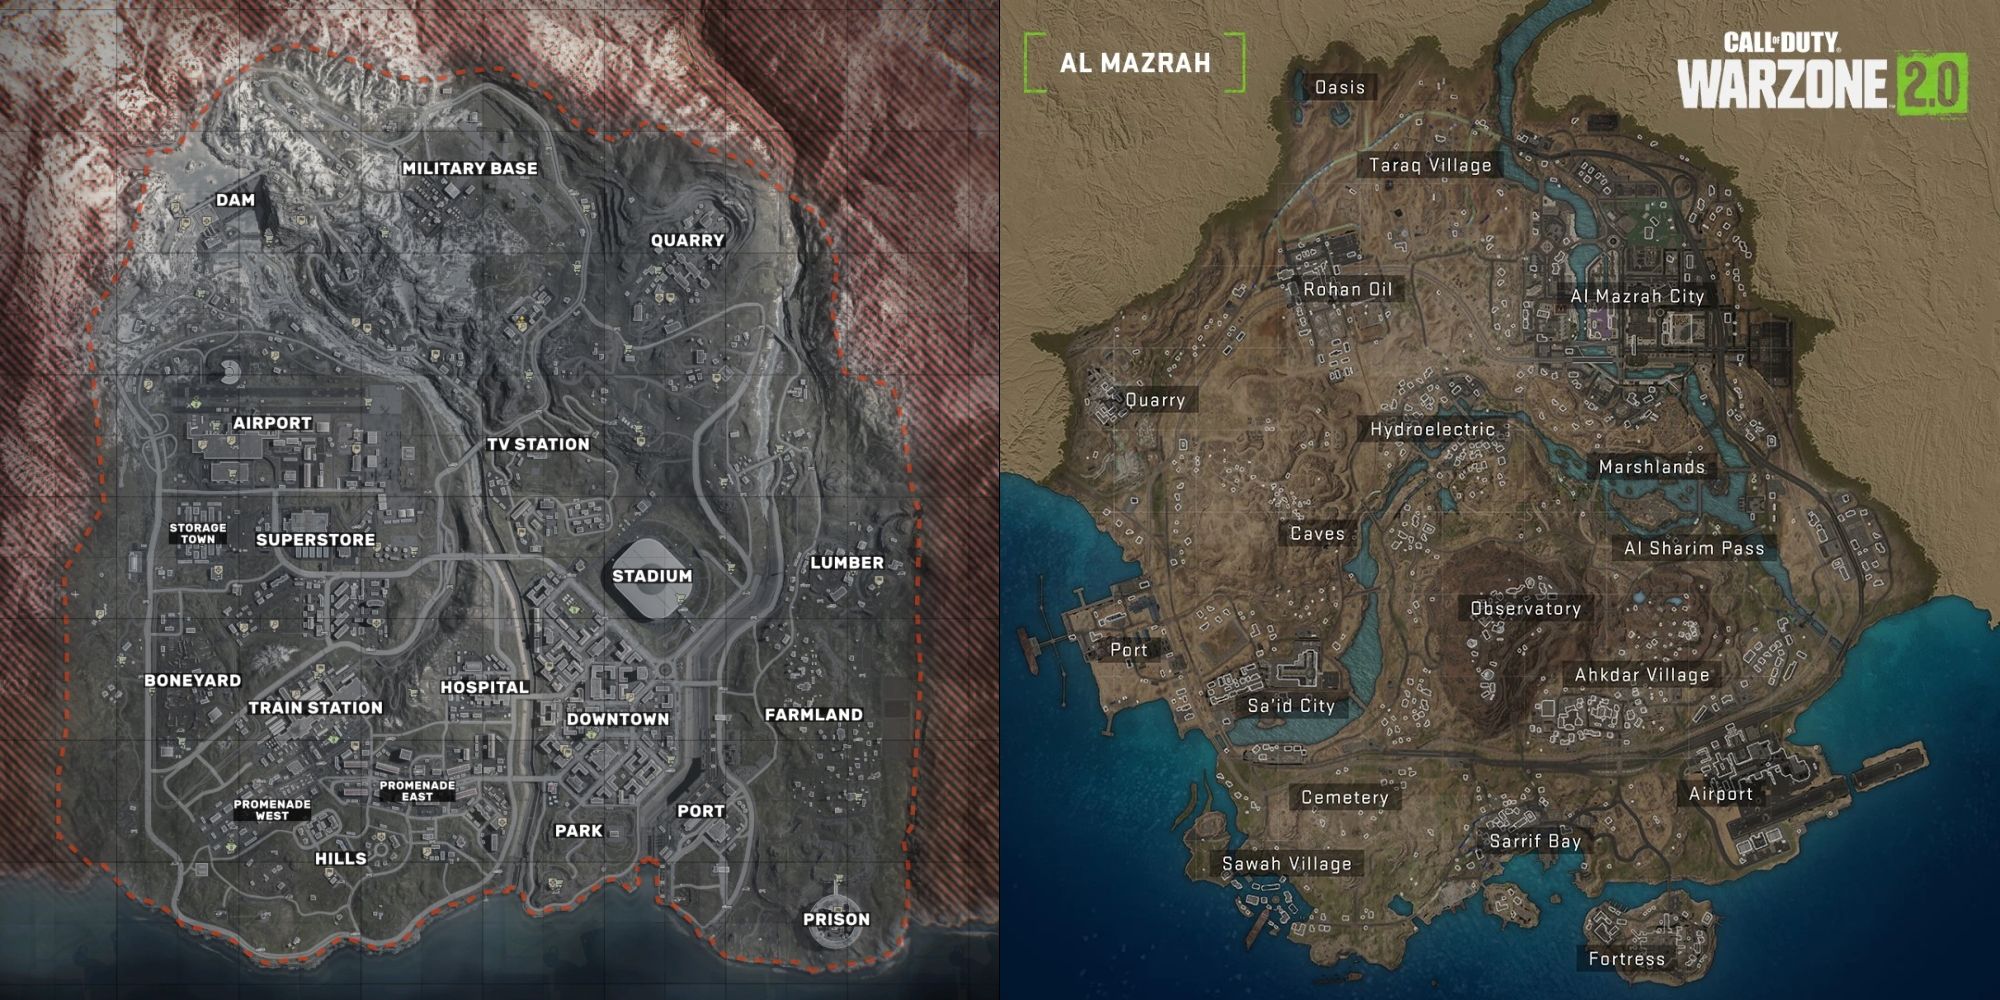 Uma comparação lado a lado dos mapas de Verdansk e Al Mazrah de Call of Duty Warzone.